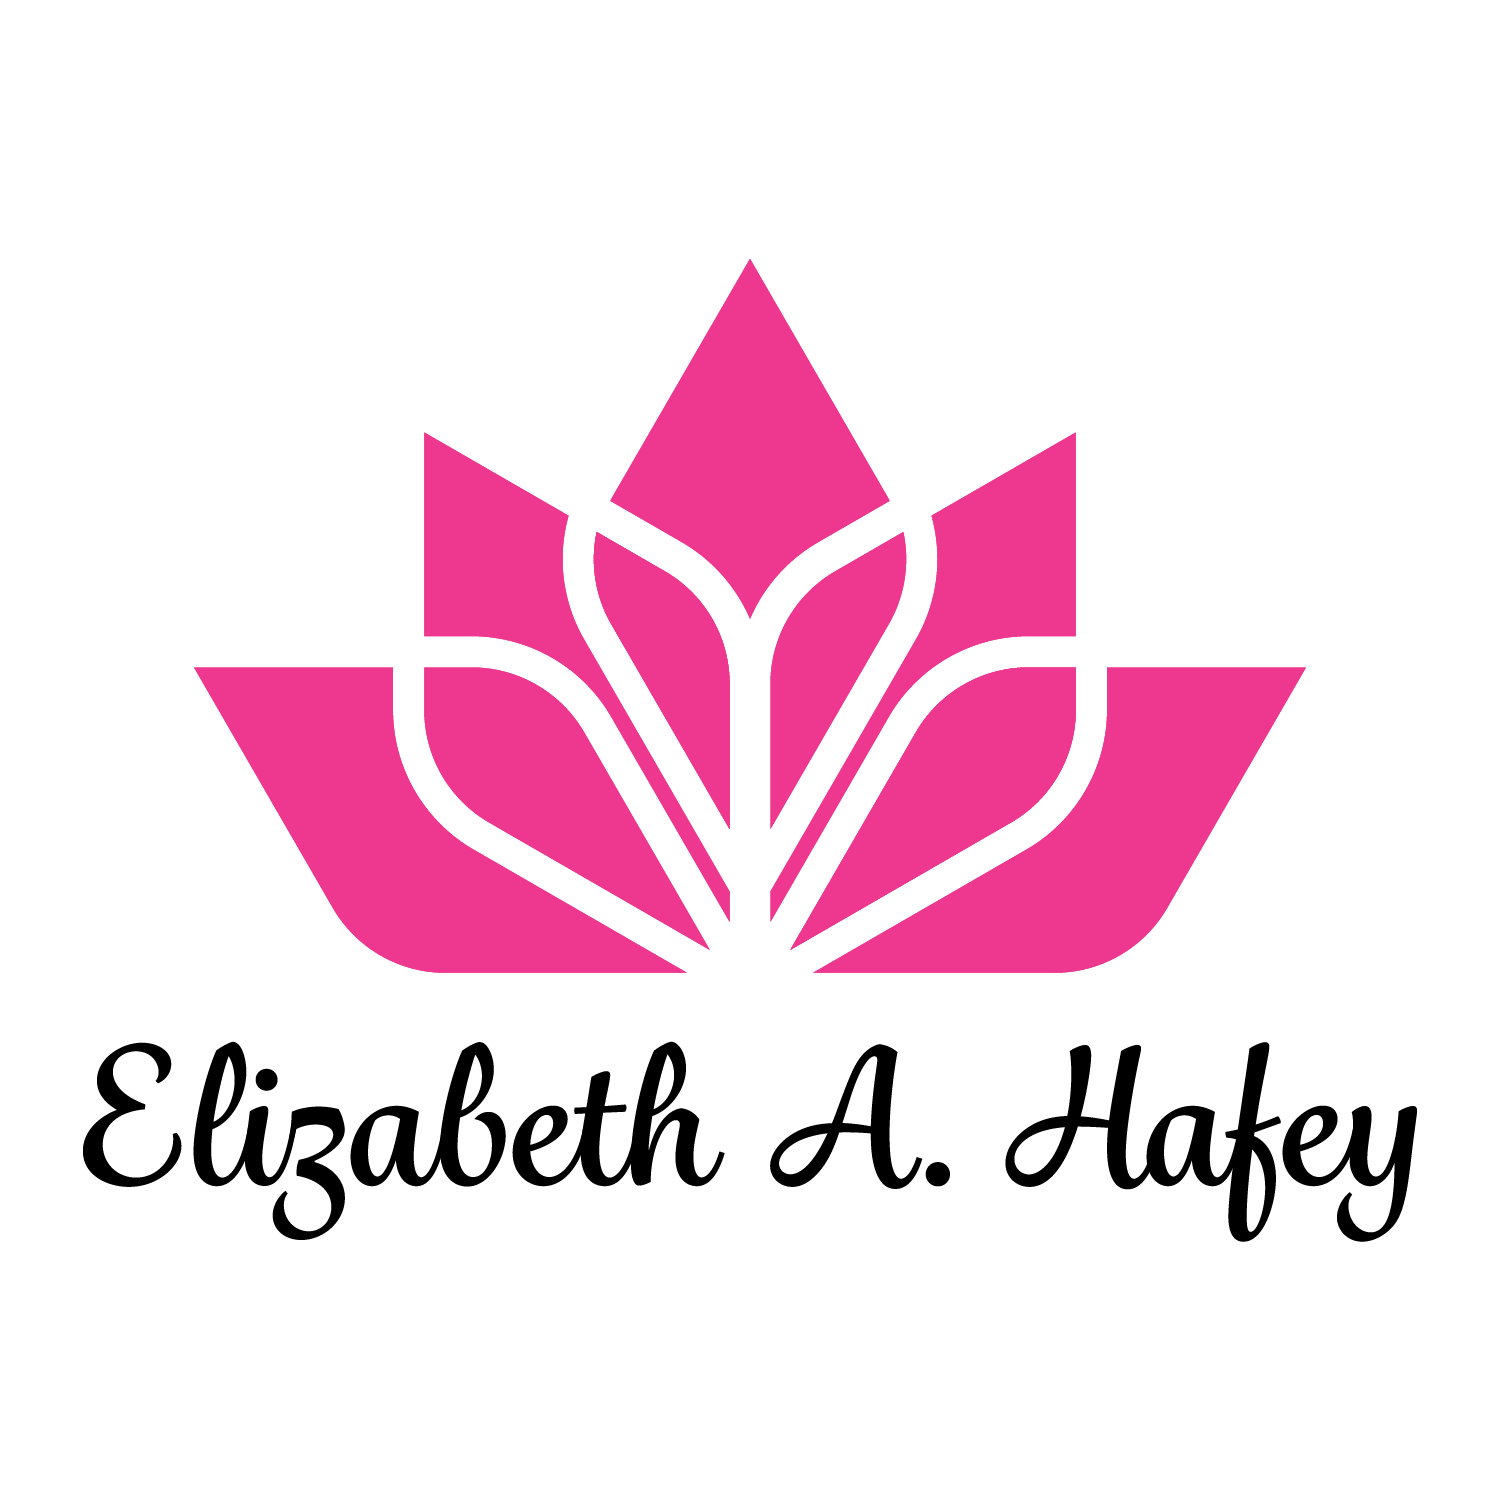 Elizabeth A. Hafey